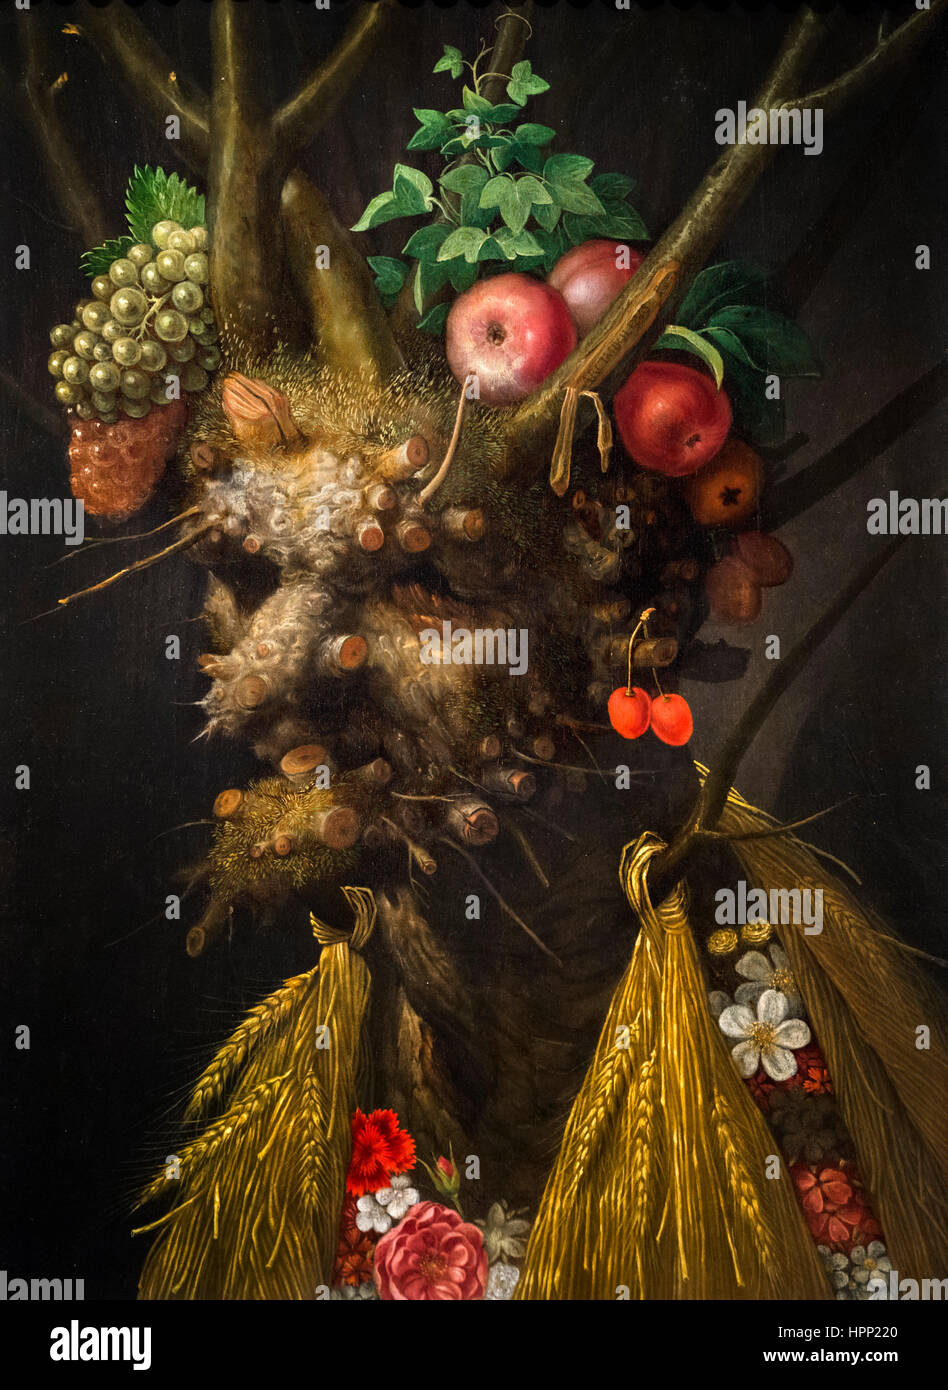 Quatre saisons en une seule tête de Giuseppe Arcimboldo (c.1527-1593), huile sur panneau, c.1590 Banque D'Images